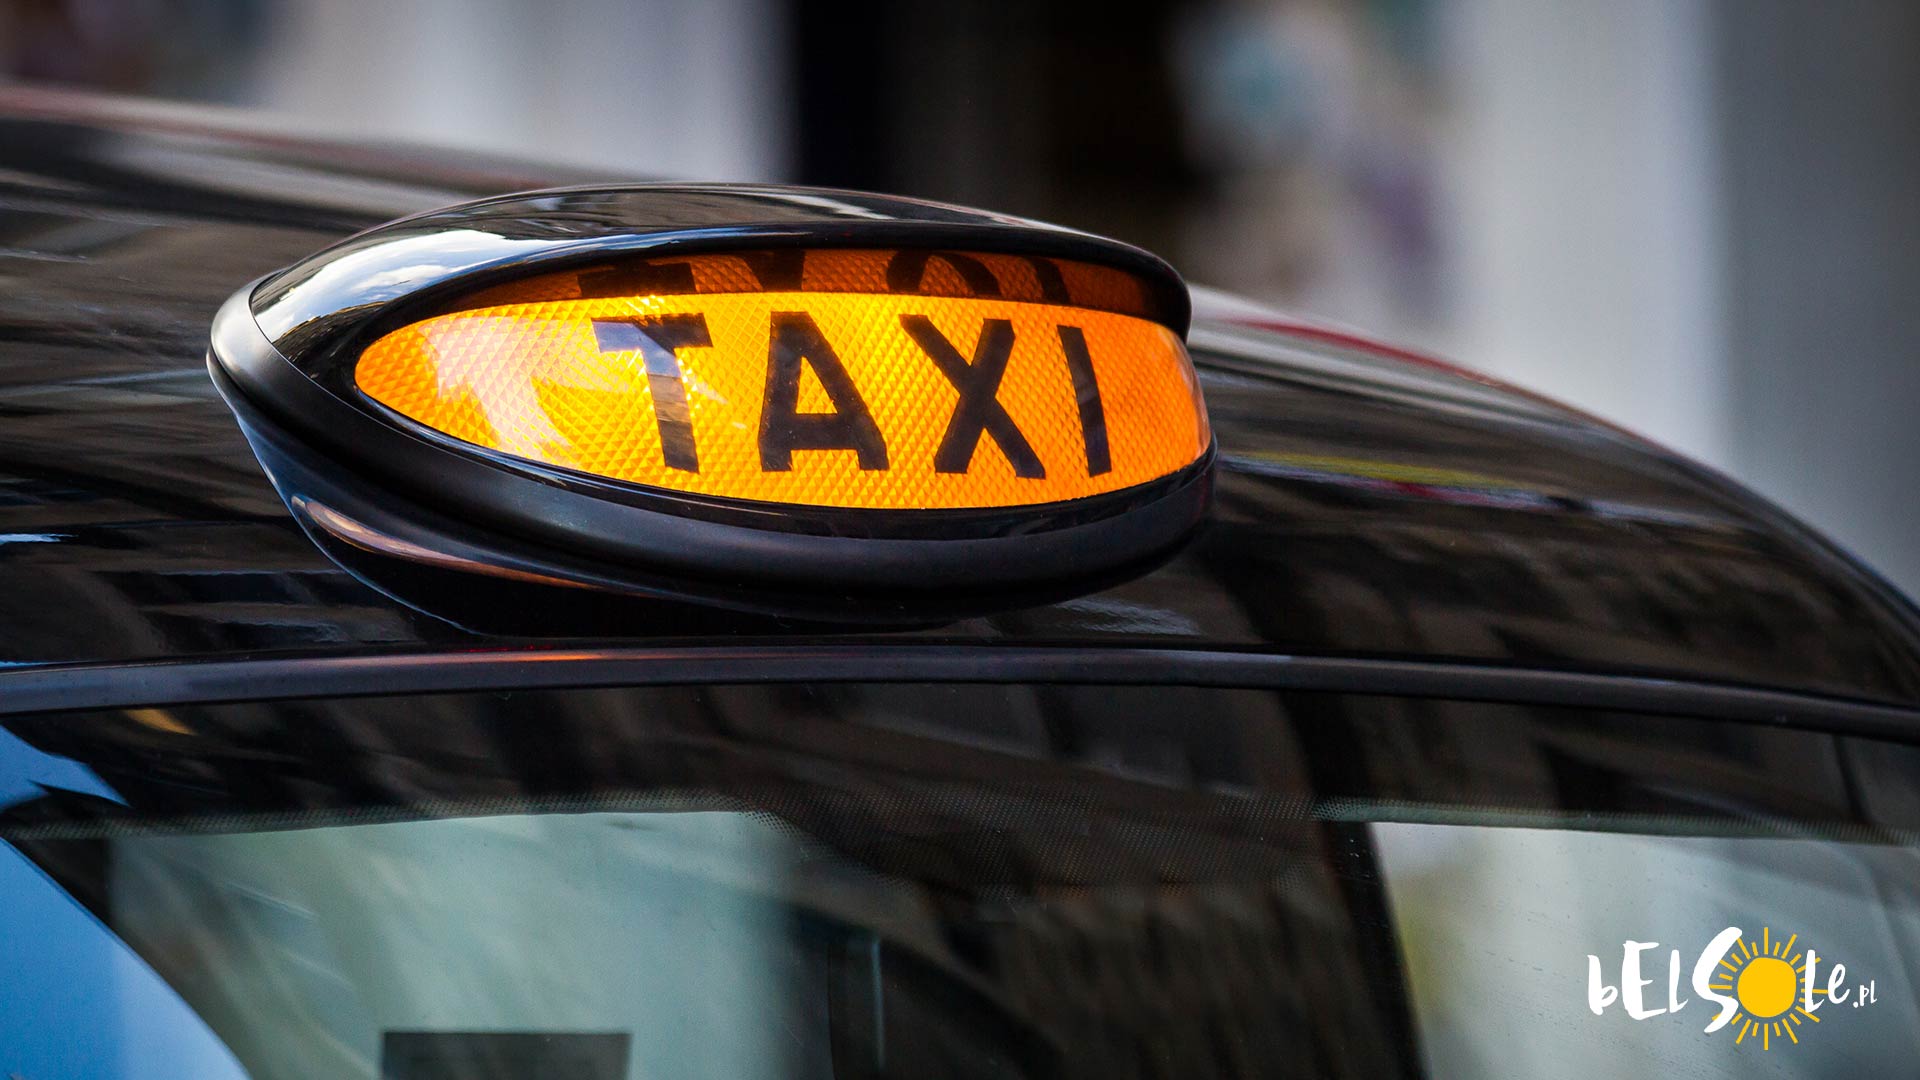 Ceny taxi w UK